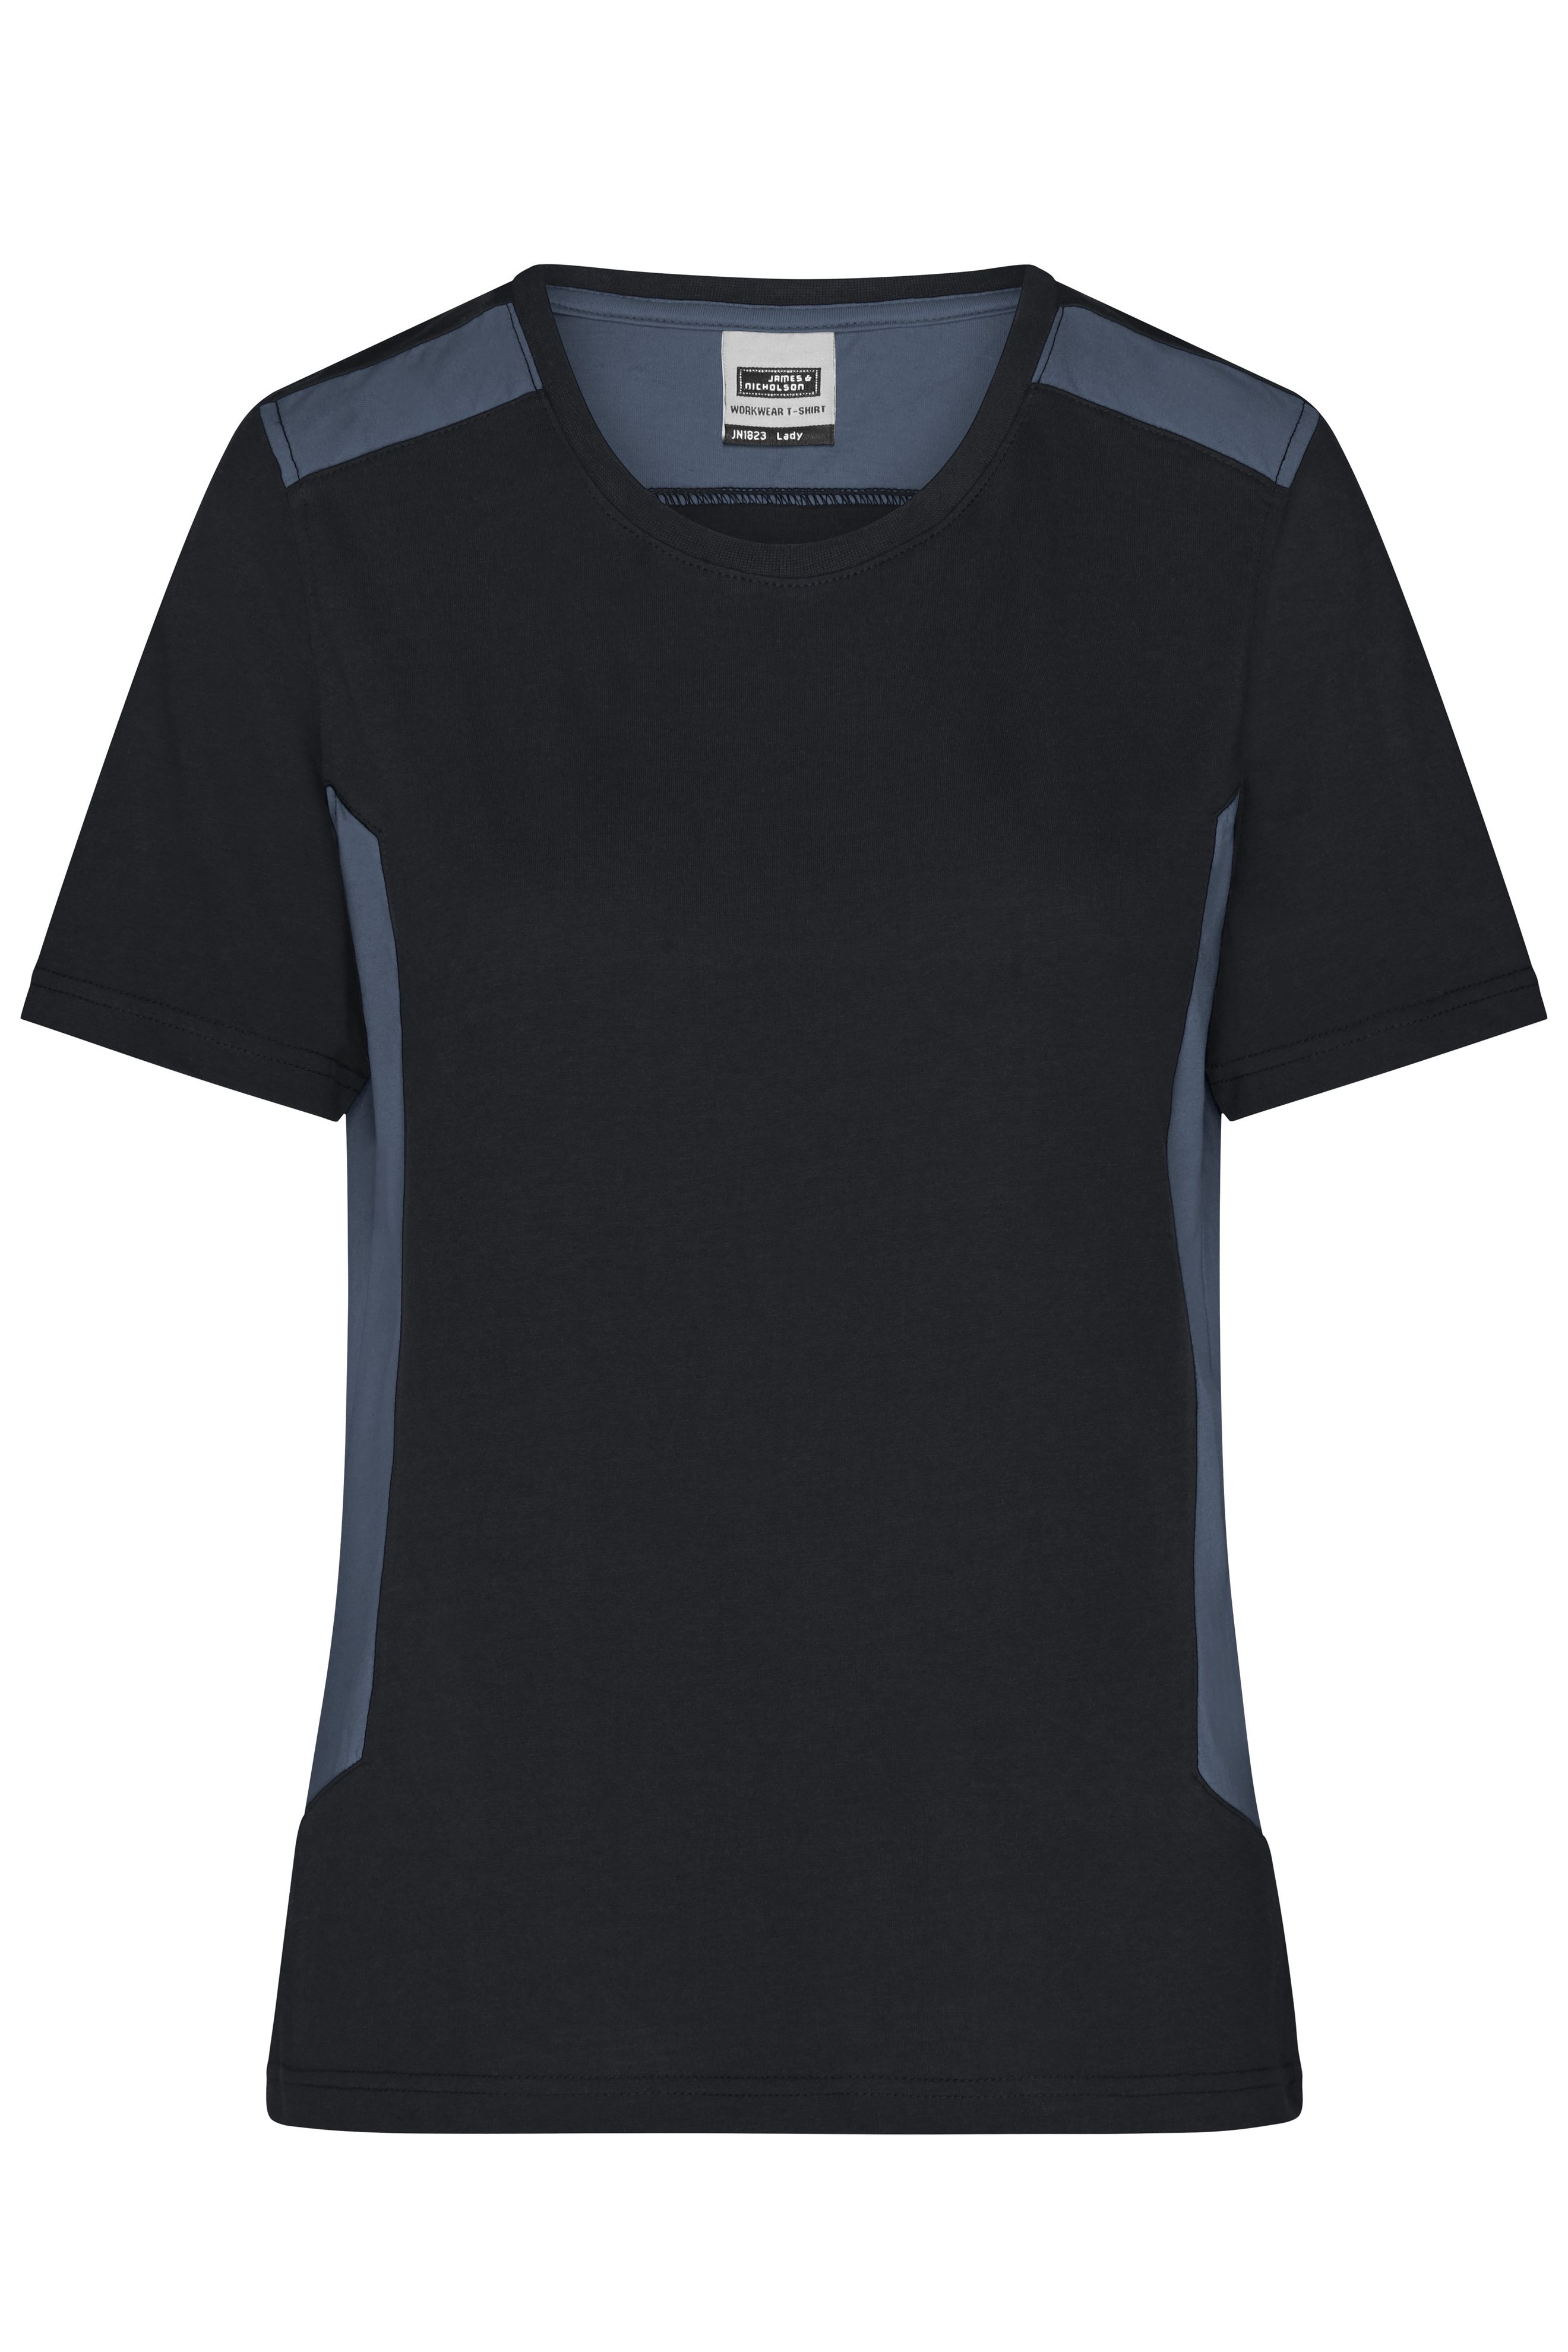 Ladies' Workwear T-Shirt - STRONG - JN1823 Strapazierfähiges und pflegeleichtes T-Shirt mit Kontrasteinsätzen